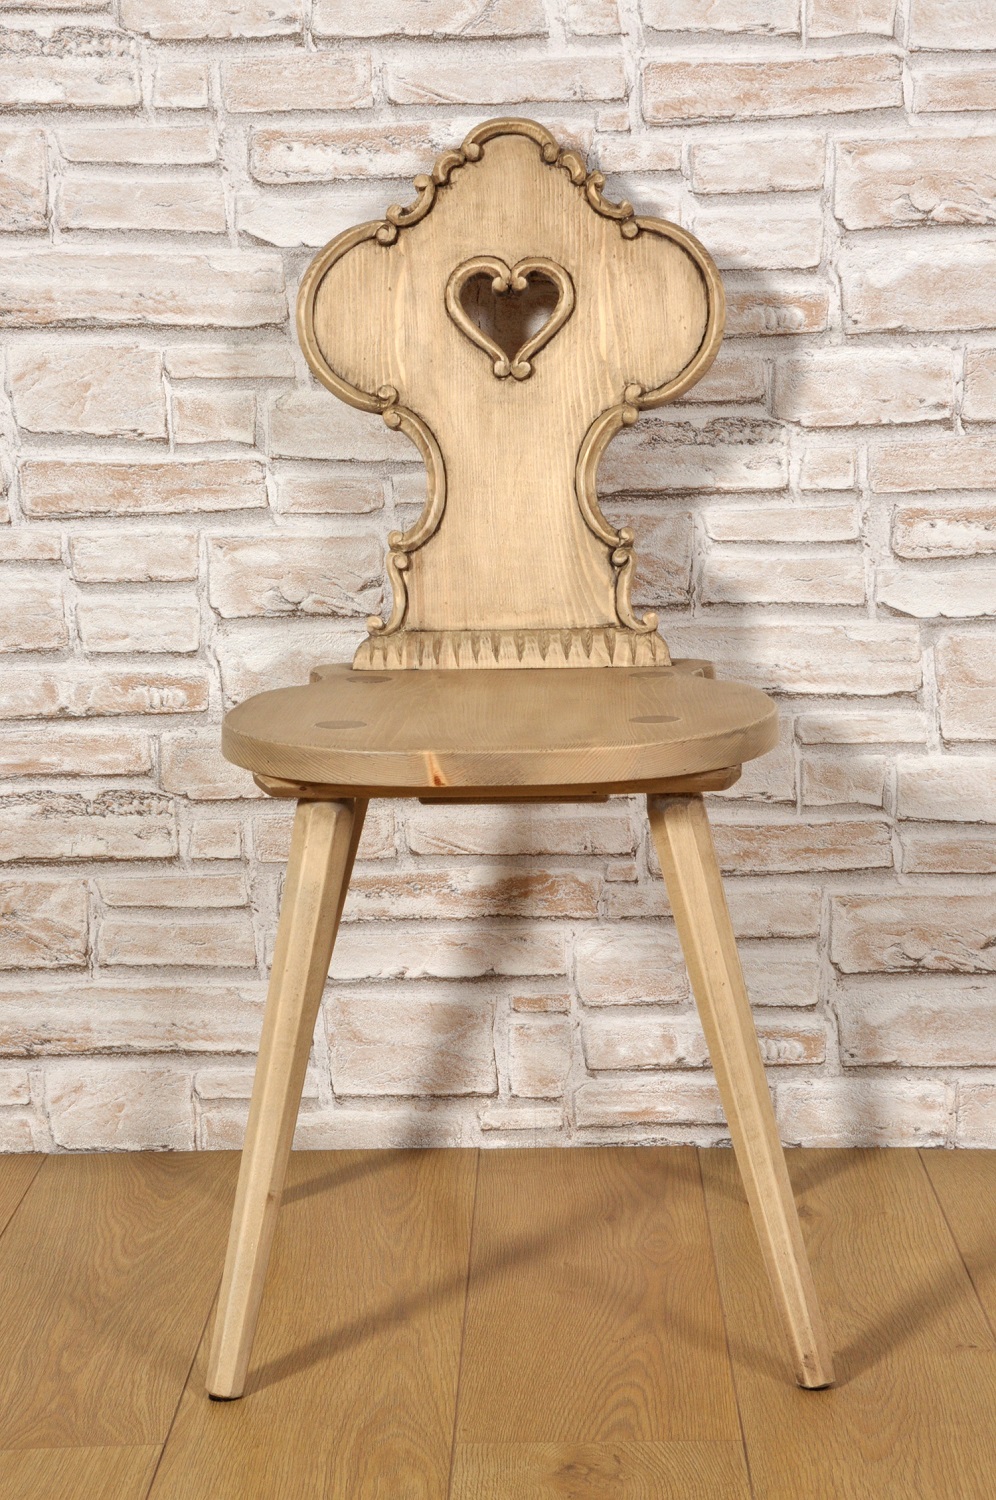 sedia alpina in legno di cirmolo intagliata a cuore arredo tipico tirolese prodotto per prestigiose case e chalet di montagna